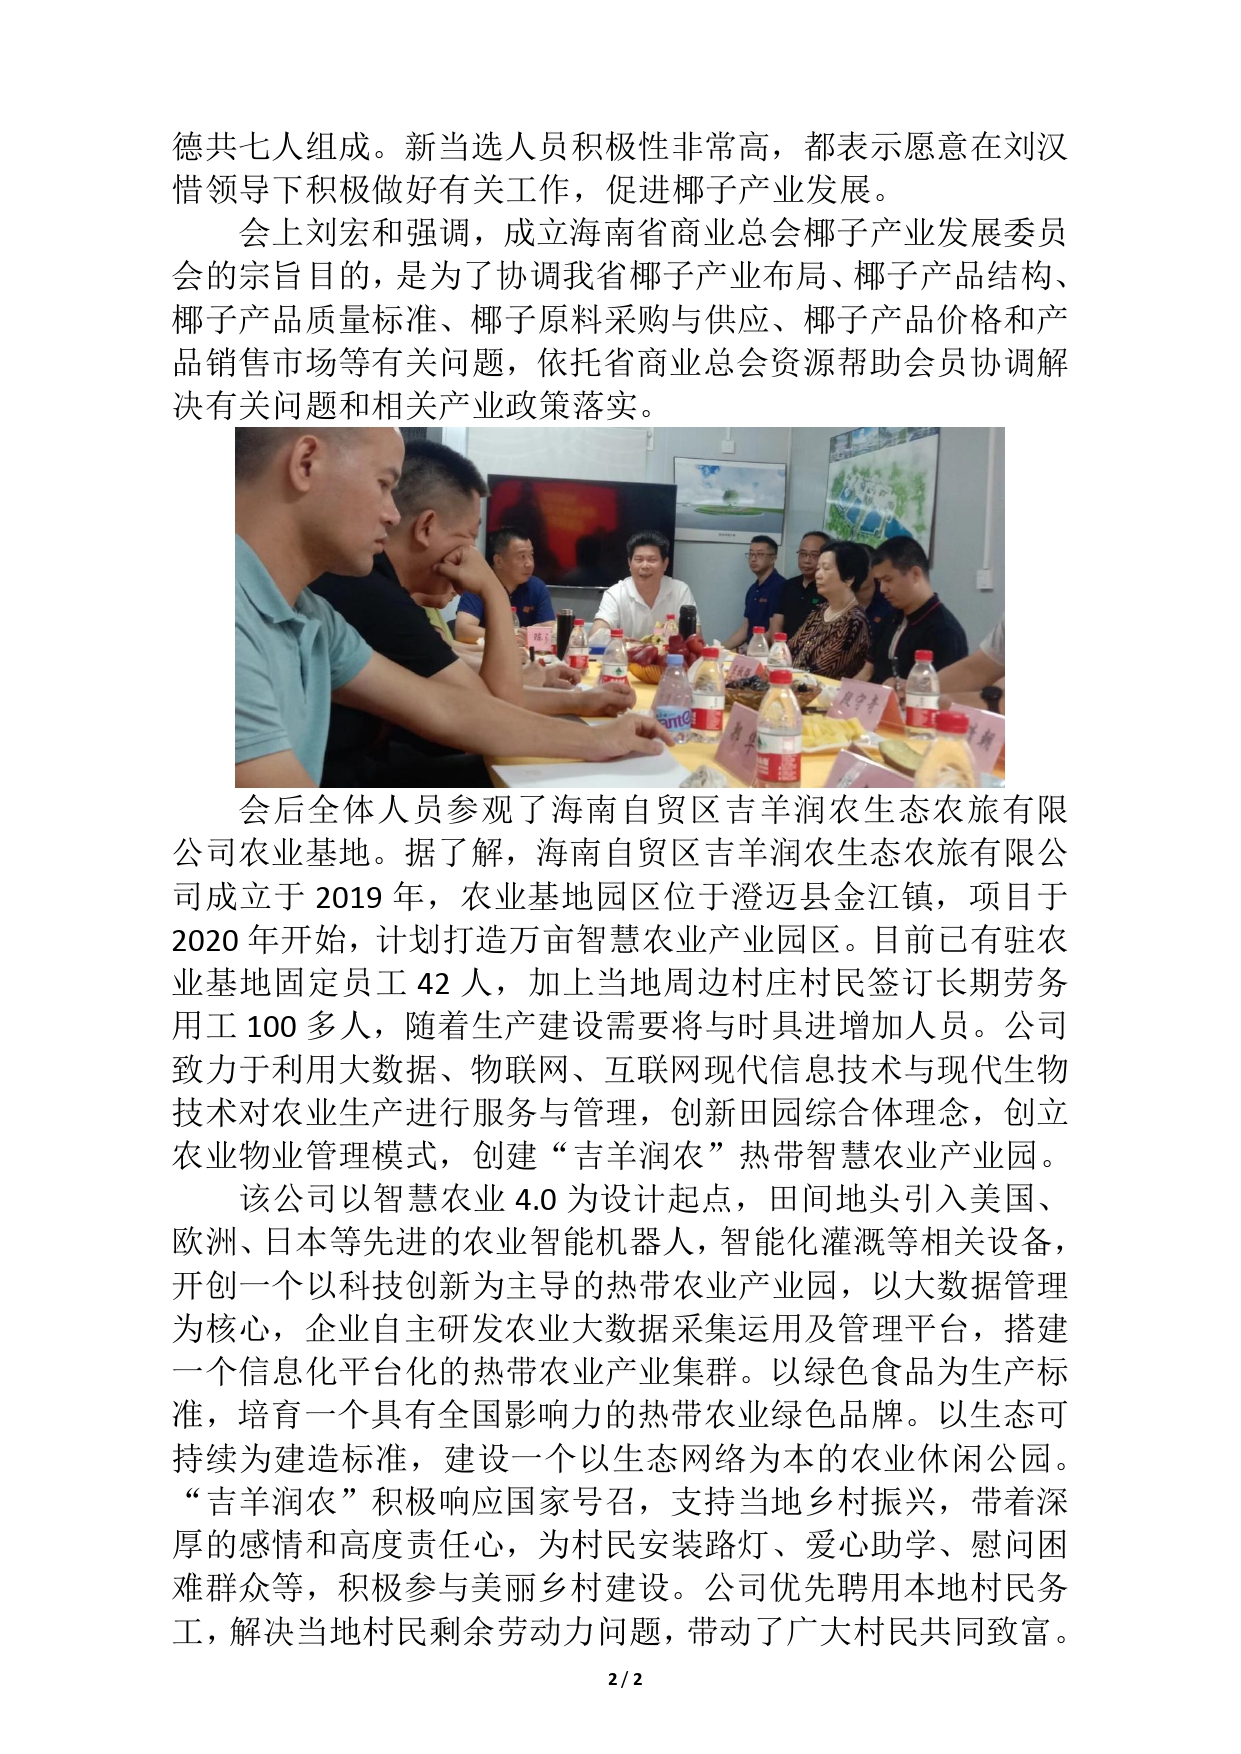 海南省商业总会椰子产业发展委员会成立(1)(1)(1)_page-0002.jpg